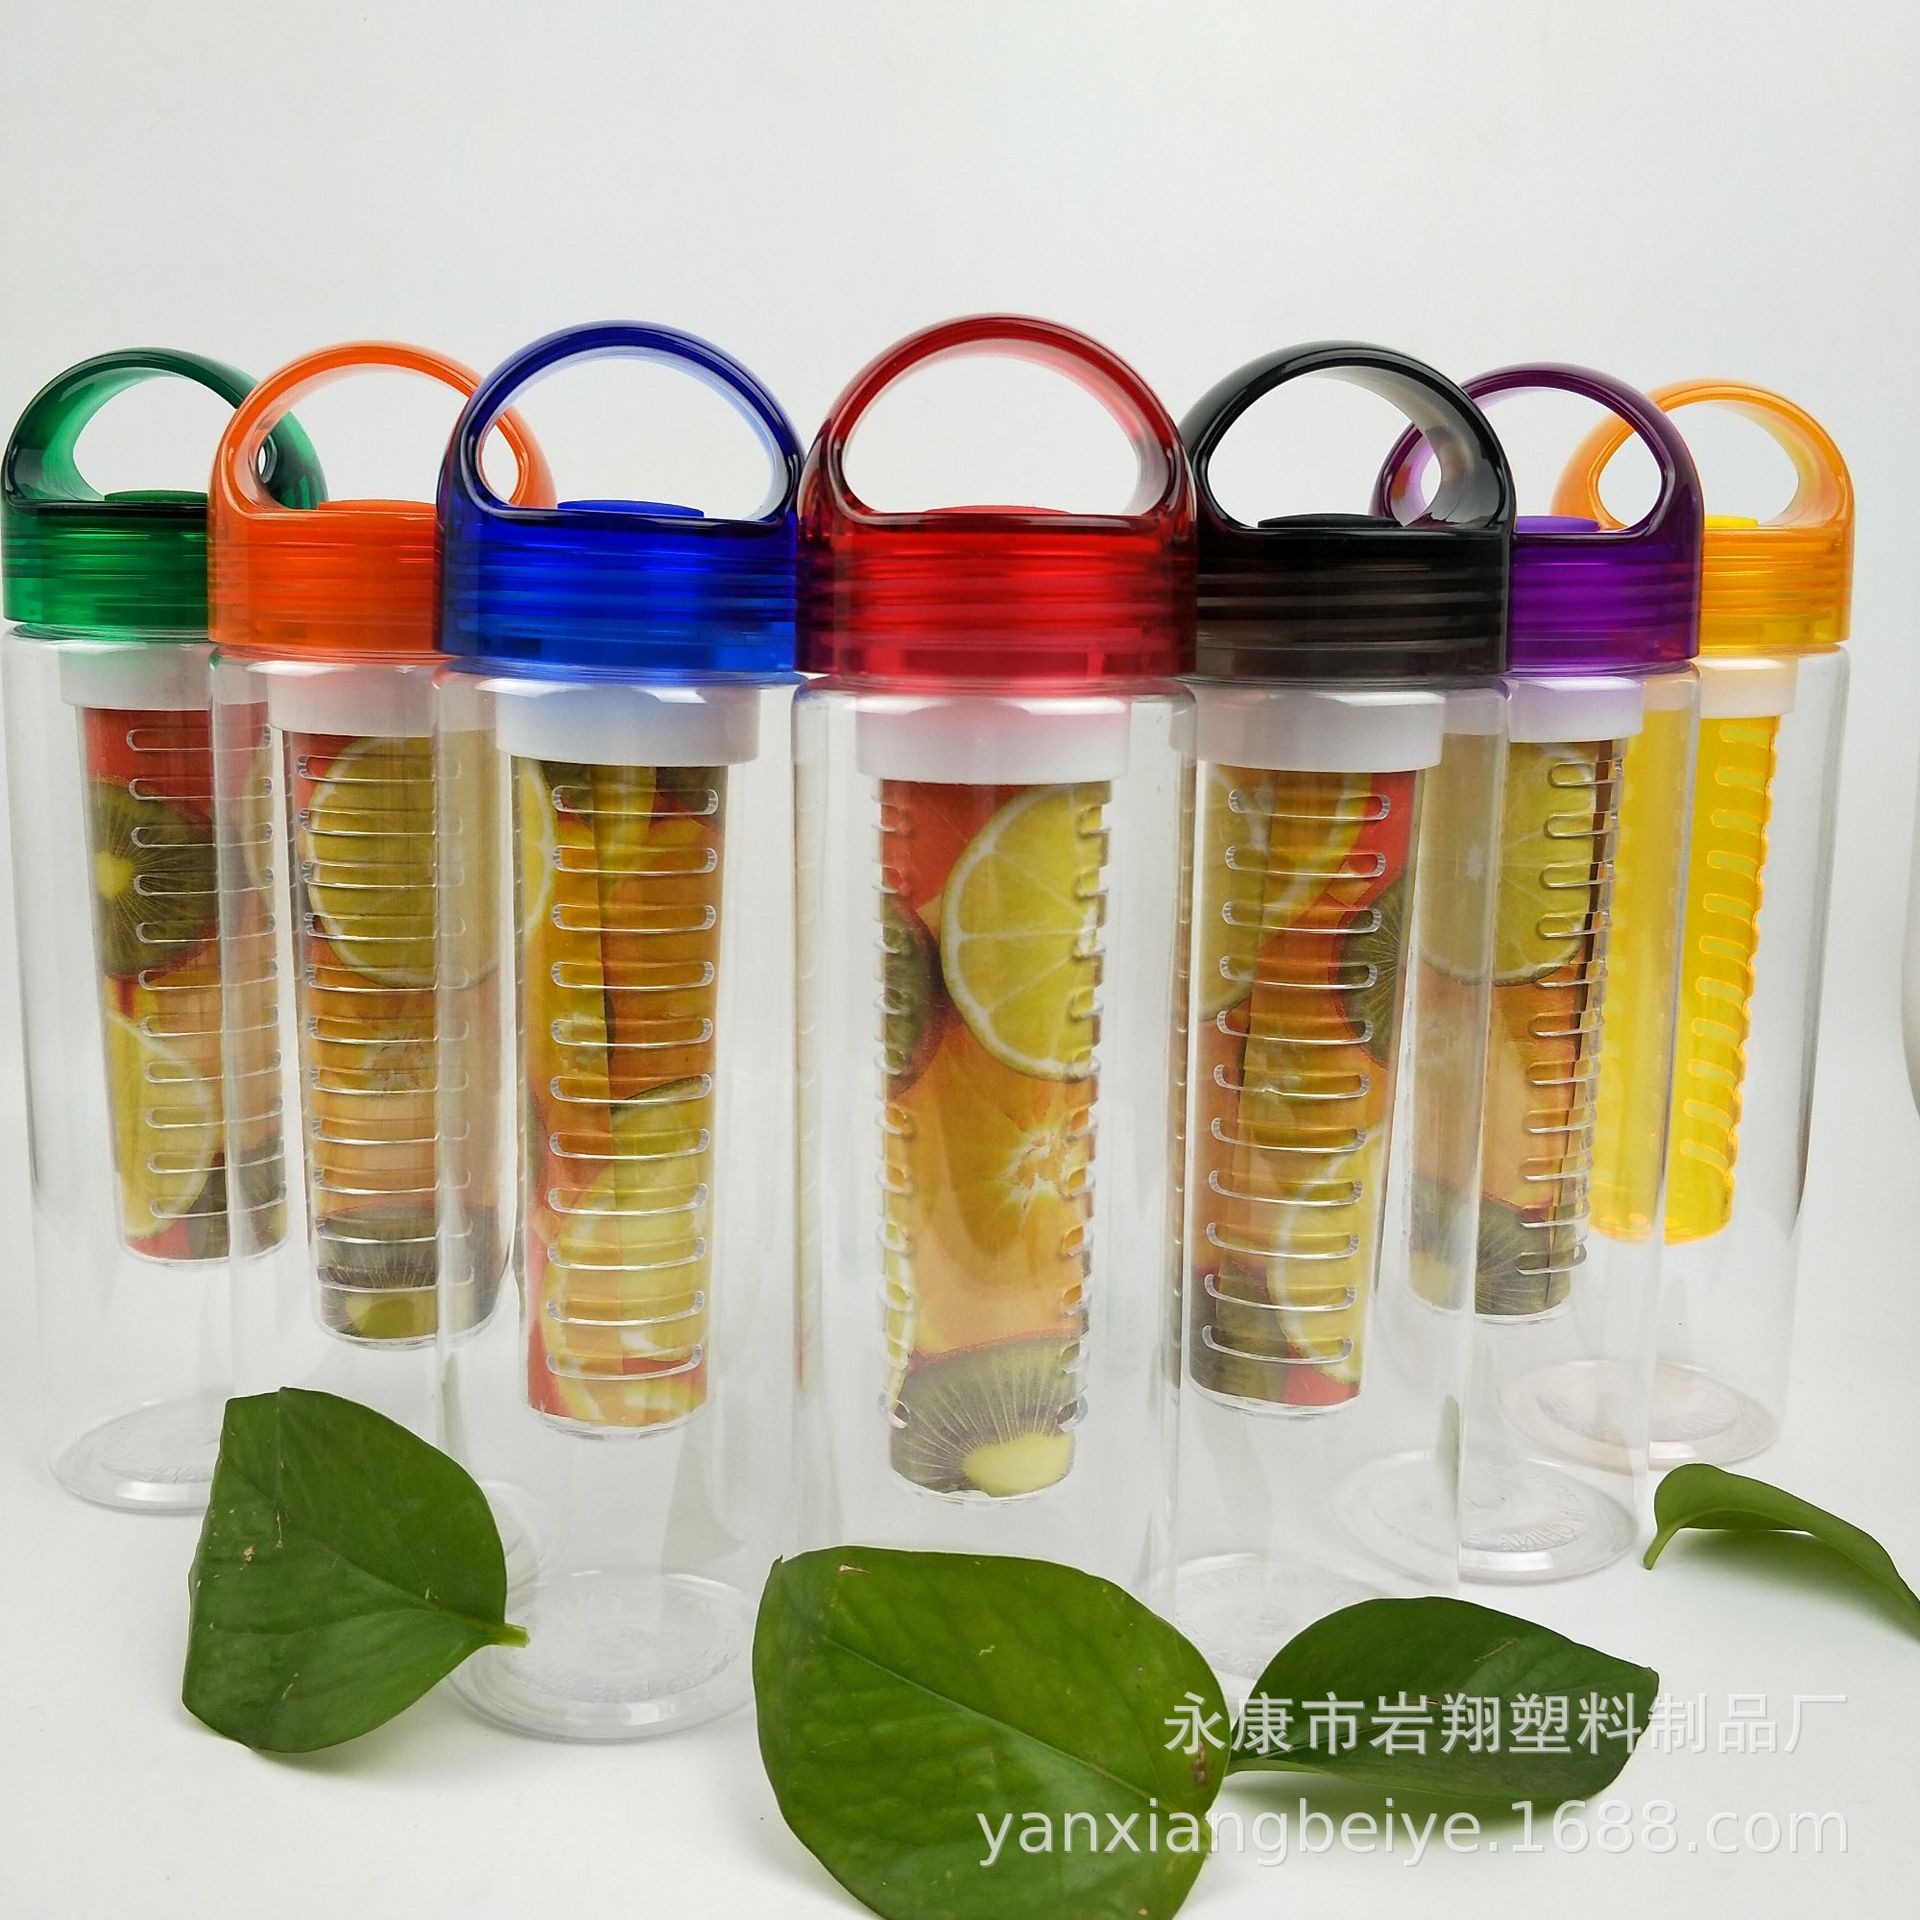 Cross-border wholesale plastic fruit cup...